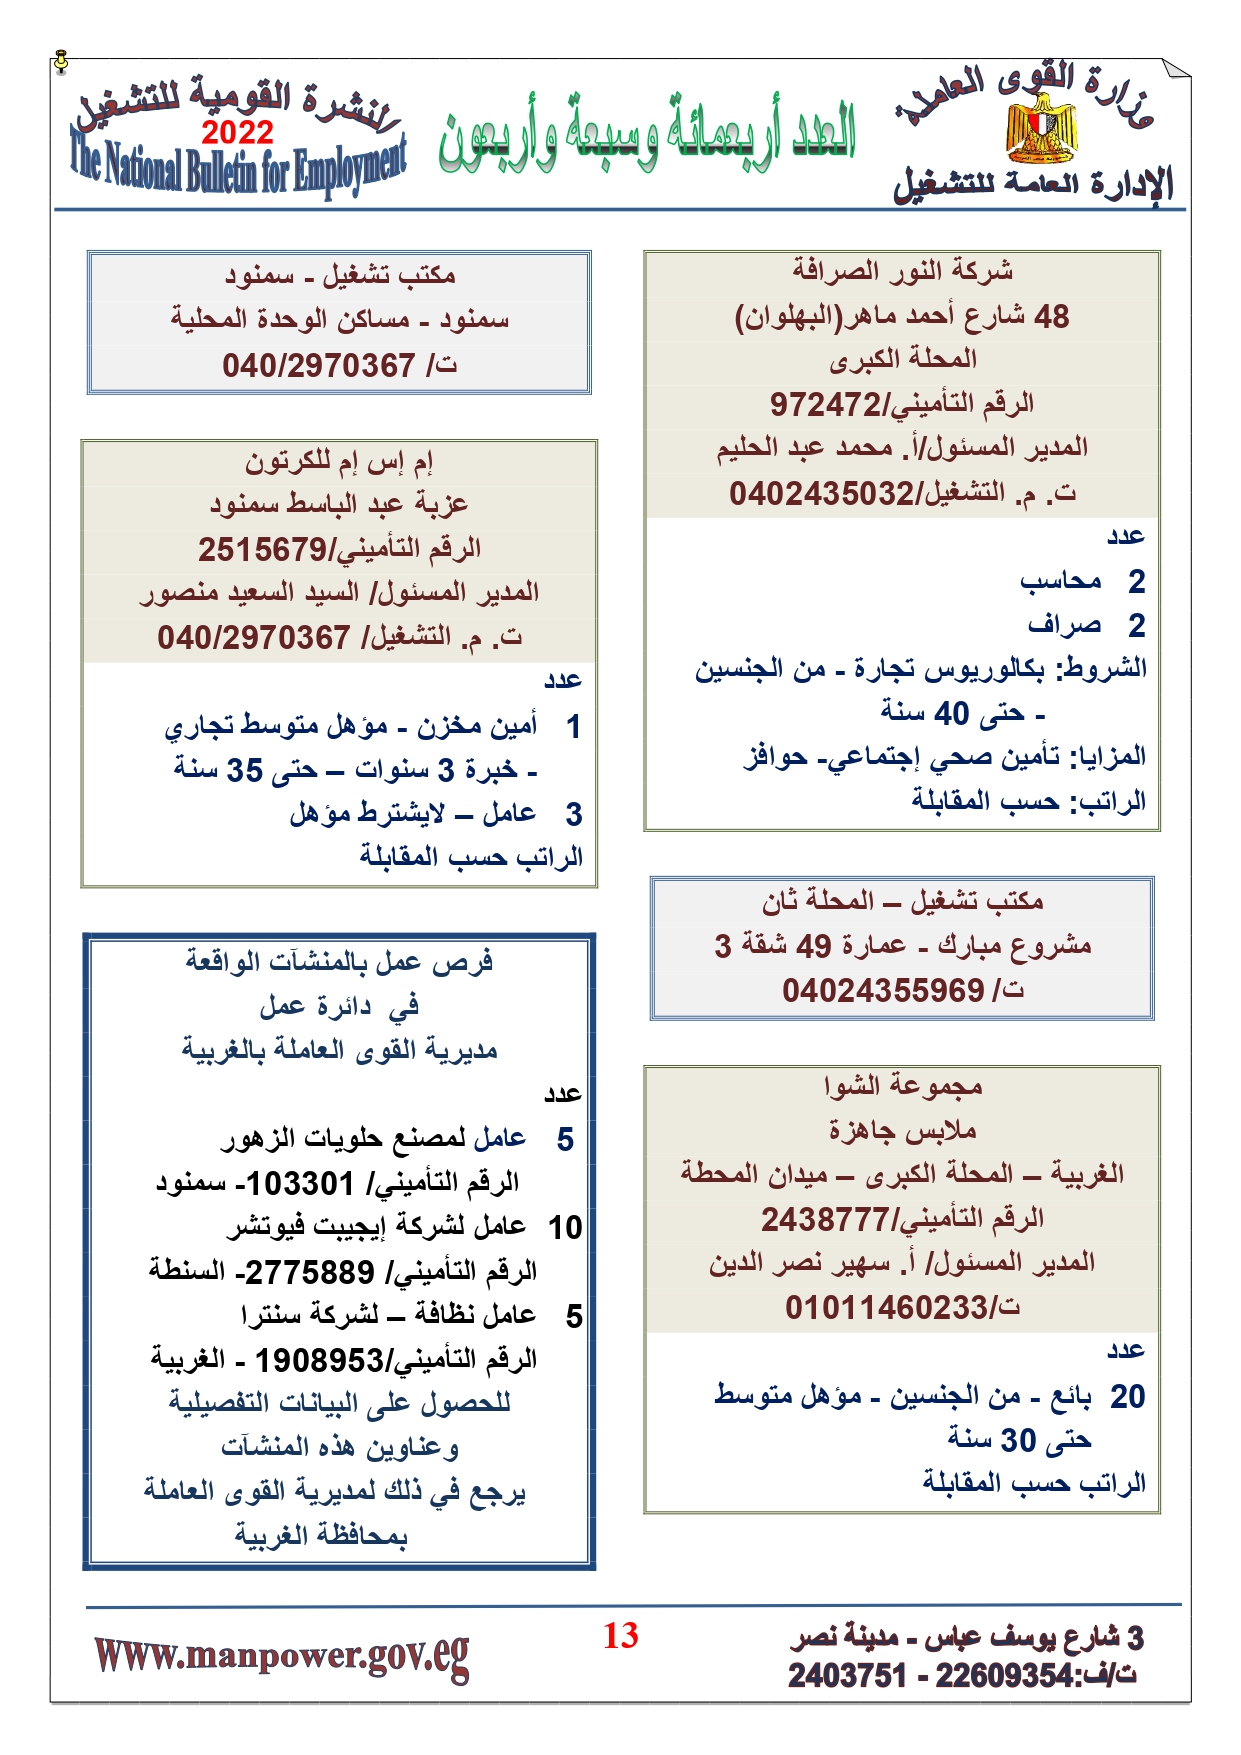 وظائف خالية بمصر وزارة القوي العاملة تعلن عن 2530 وظيفة شاغرة لجميع المؤهلات خلال فبراير ومارس 2022 9